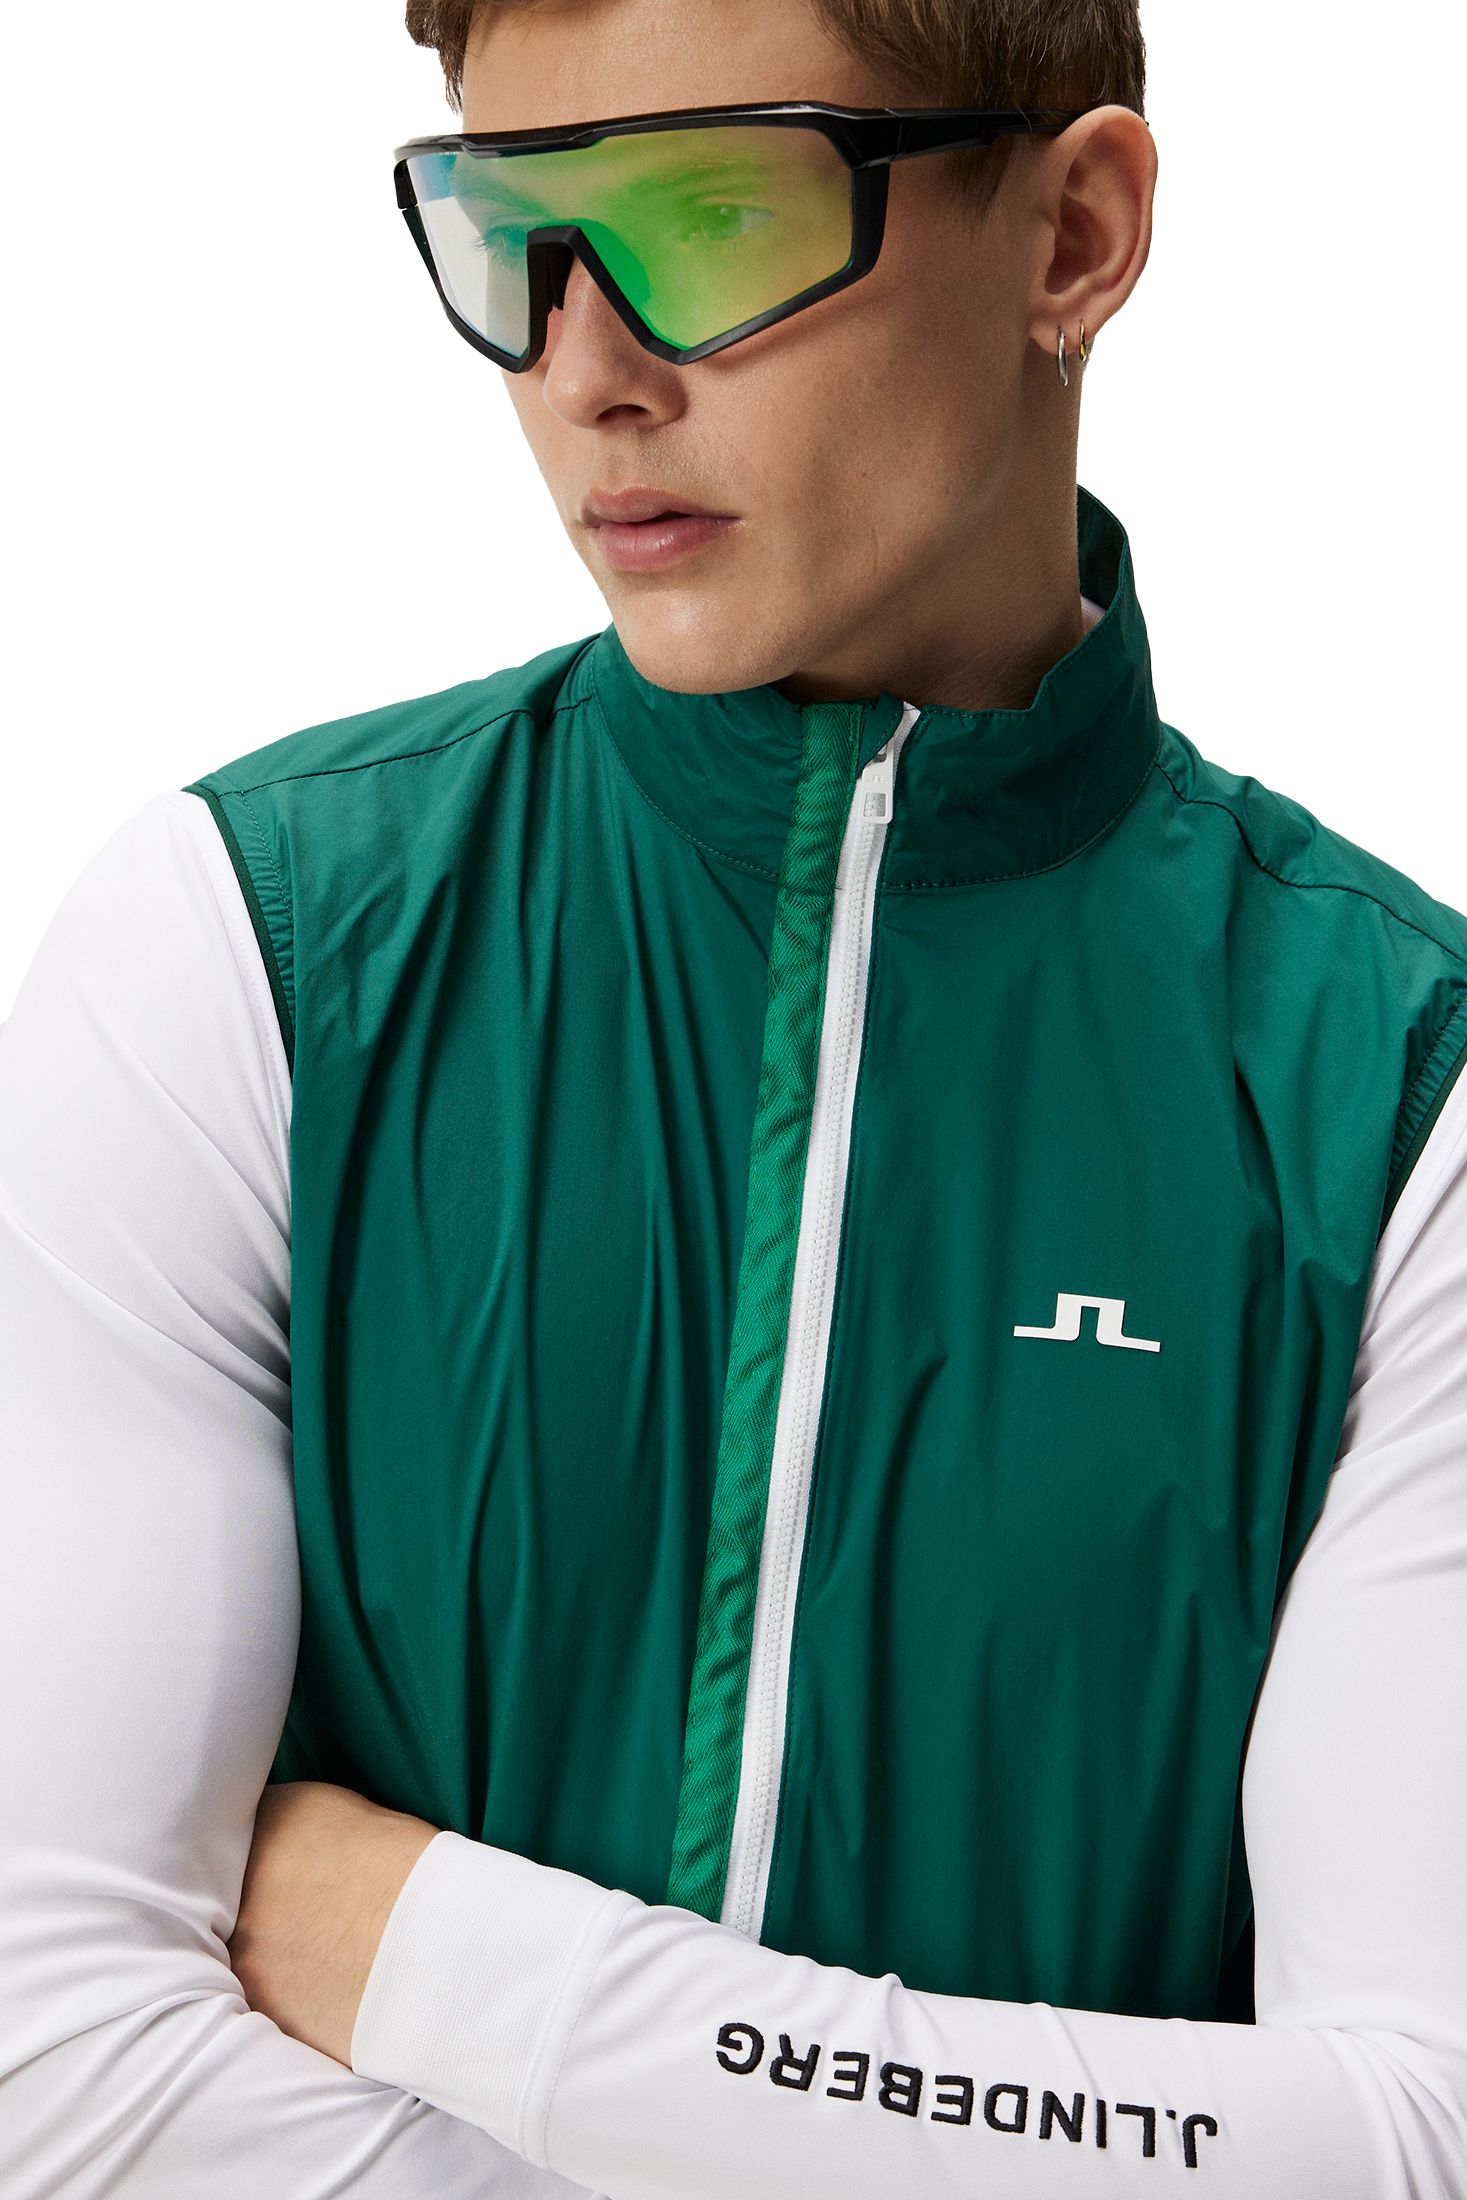 J LINDEBERG, M Ash Light Packable Golf Vest